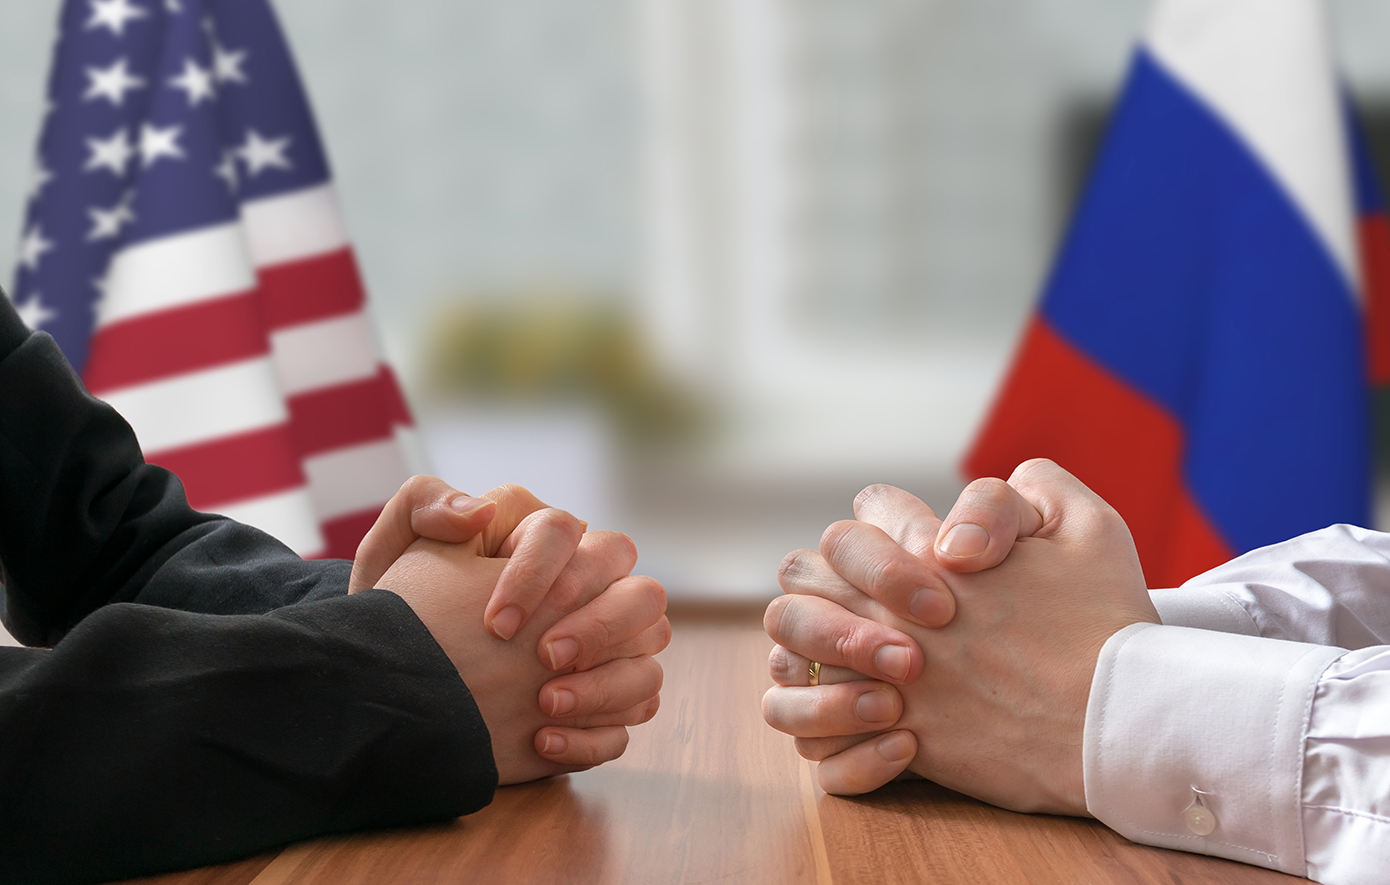 Η Ρωσία θα υποβαθμίσει τις σχέσεις τις με τις ΗΠΑ σε περίπτωση που κατασχεθούν τα περιουσιακά της στοιχεία